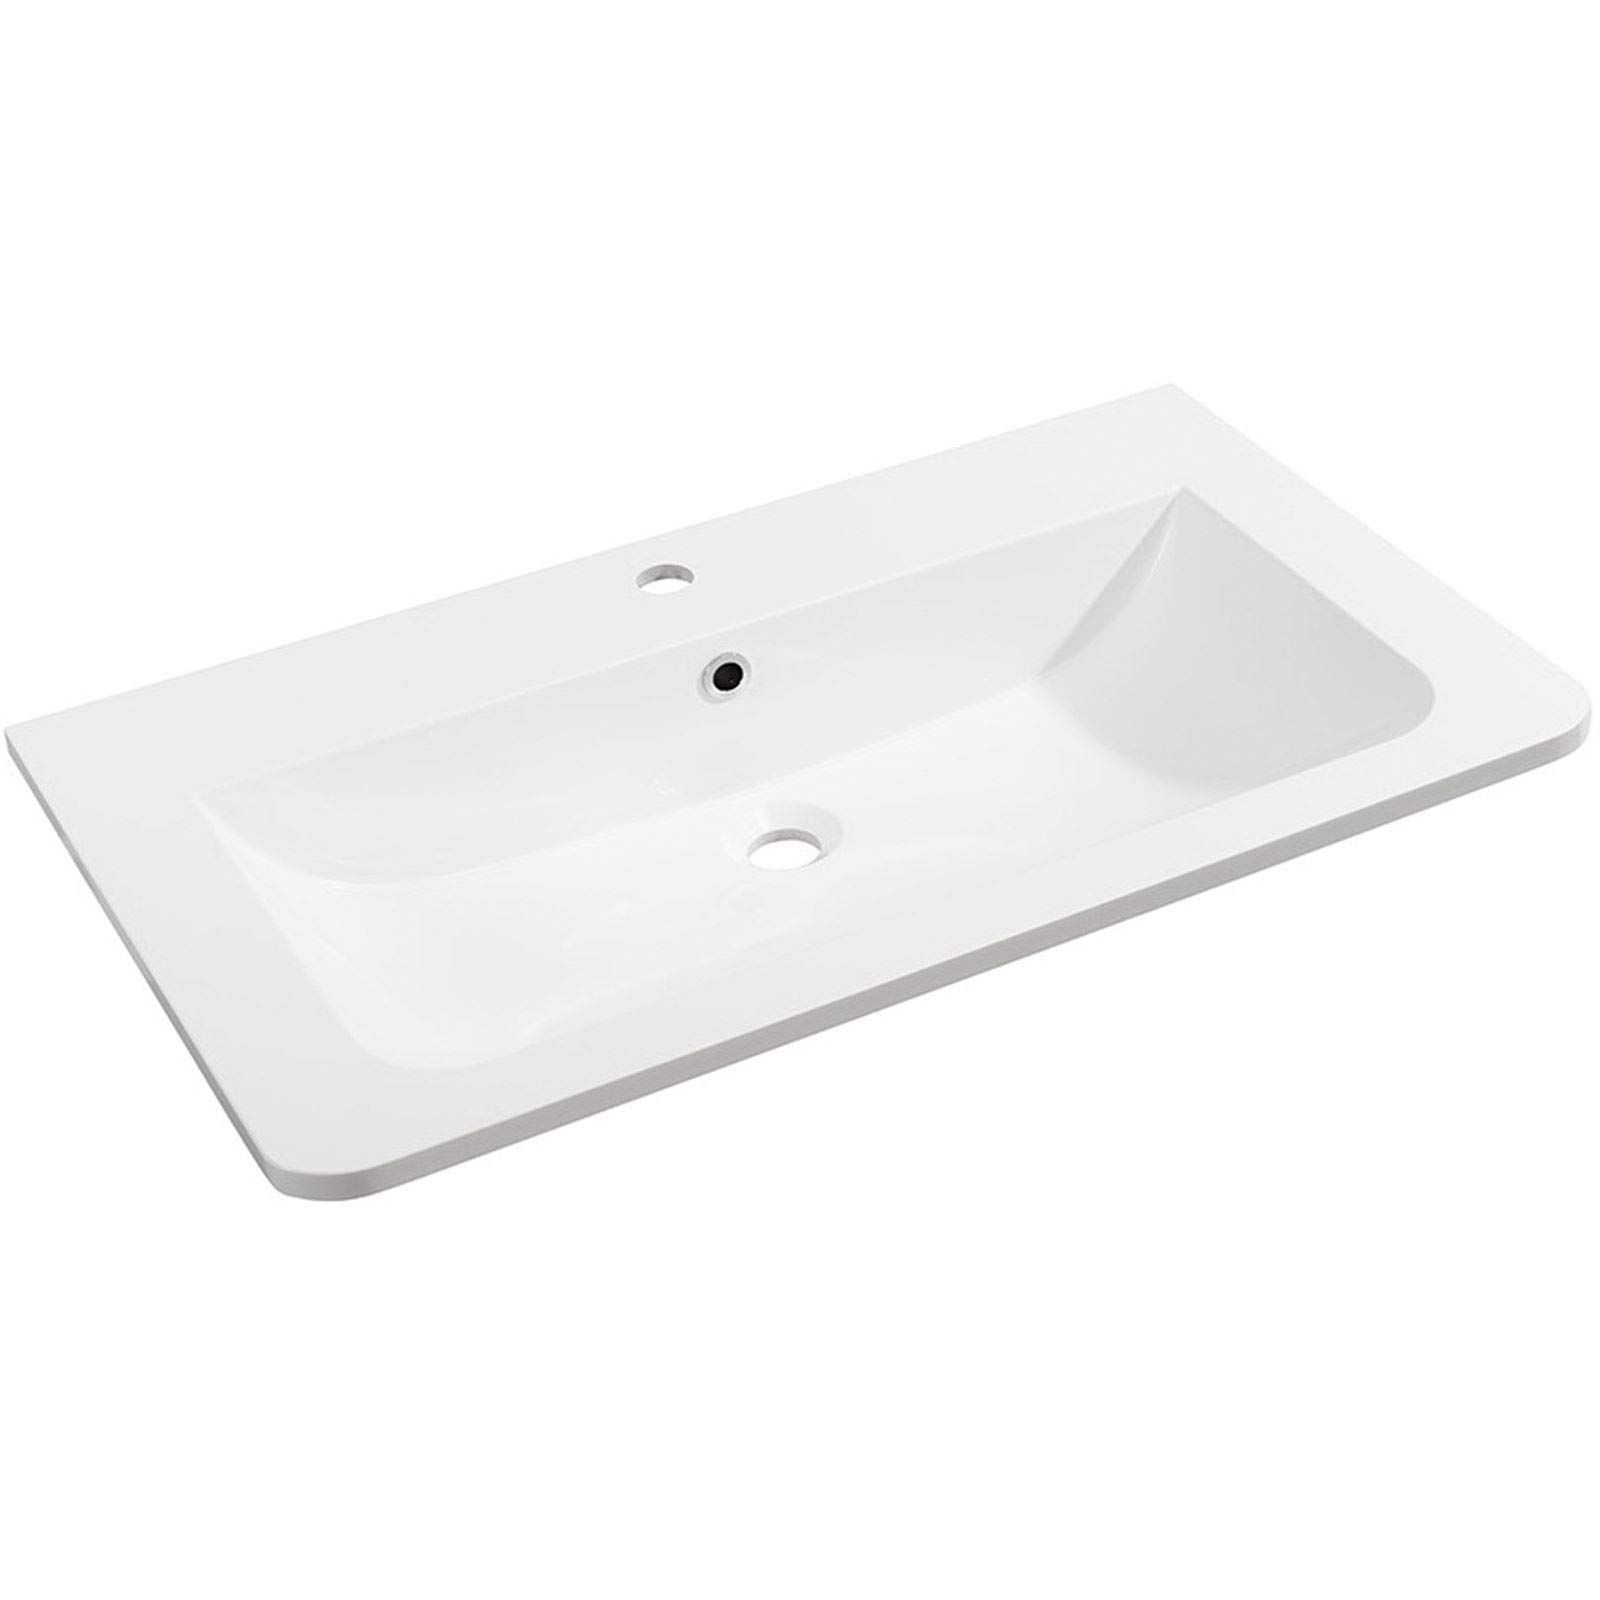 FACKELMANN Gussmarmorbecken Luxor mittig/Waschtisch aus Gussmarmor/Maße (B x H x T): ca. 80 x 14,5 x 48,5 cm/hochwertiges Waschbecken fürs Badezimmer und WC/Farbe: Weiß/Breite: 80 cm